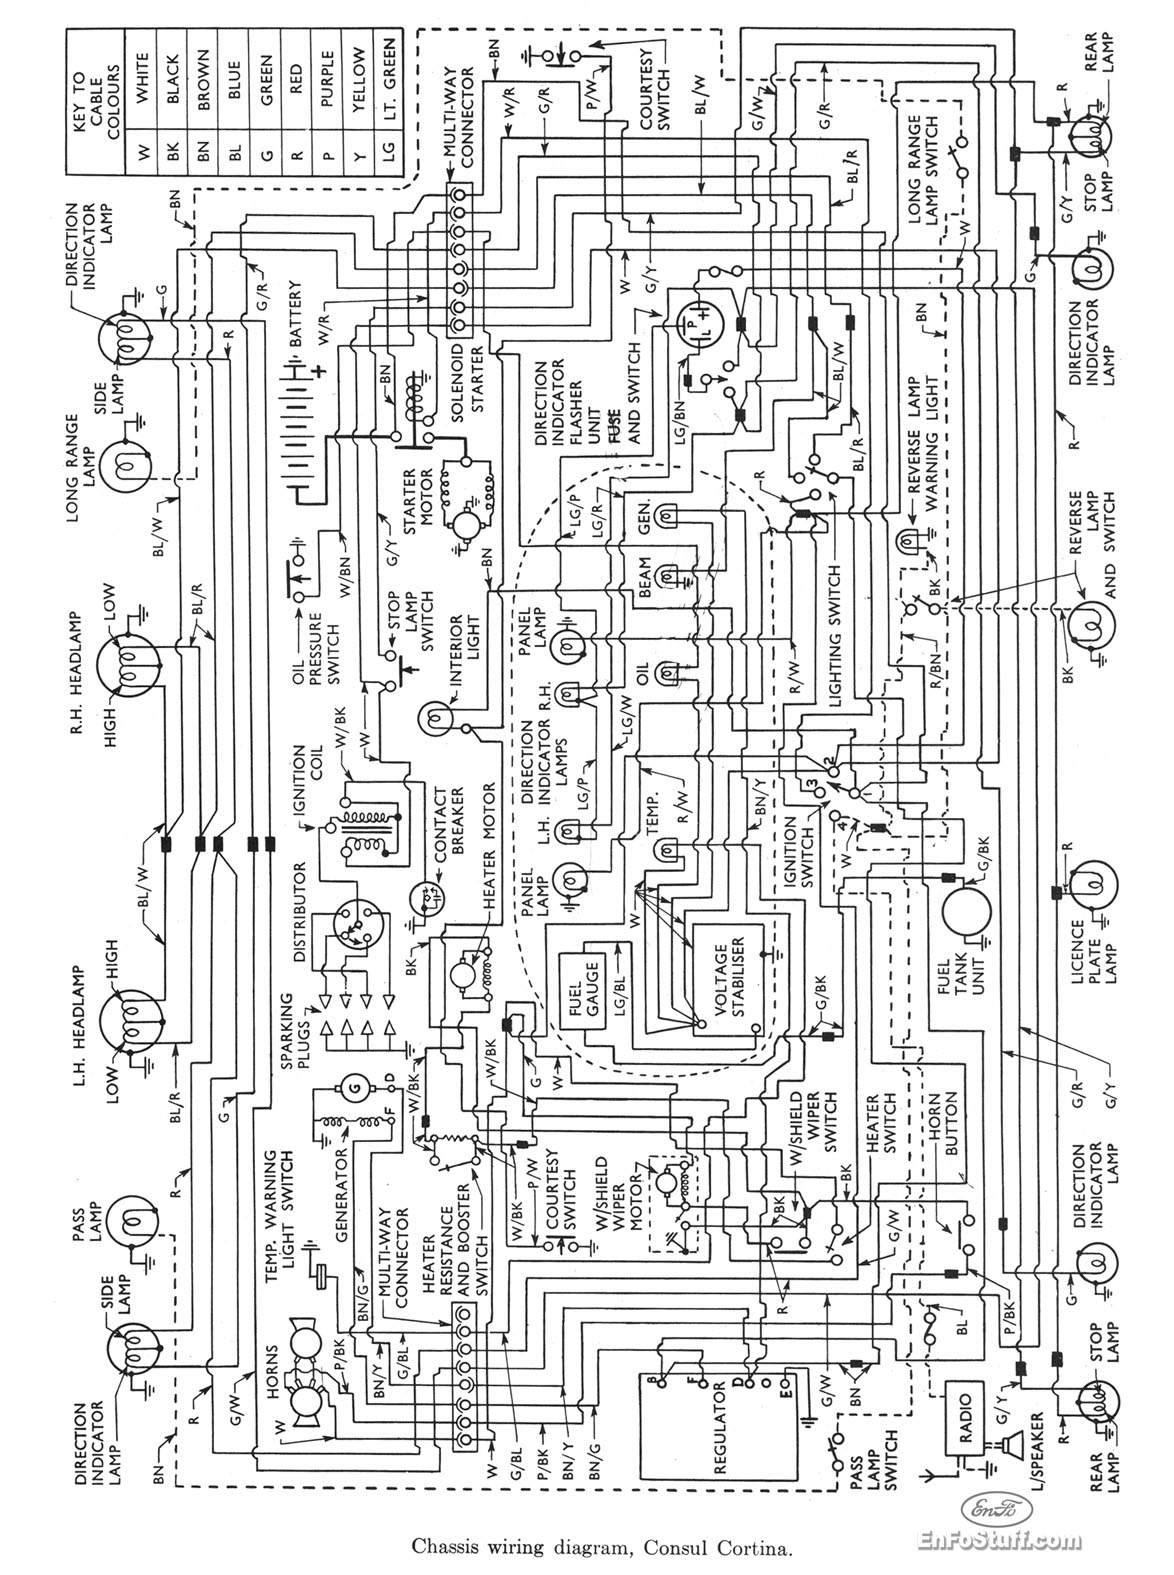 Ford Wiring Diagram from www.enfostuff.com